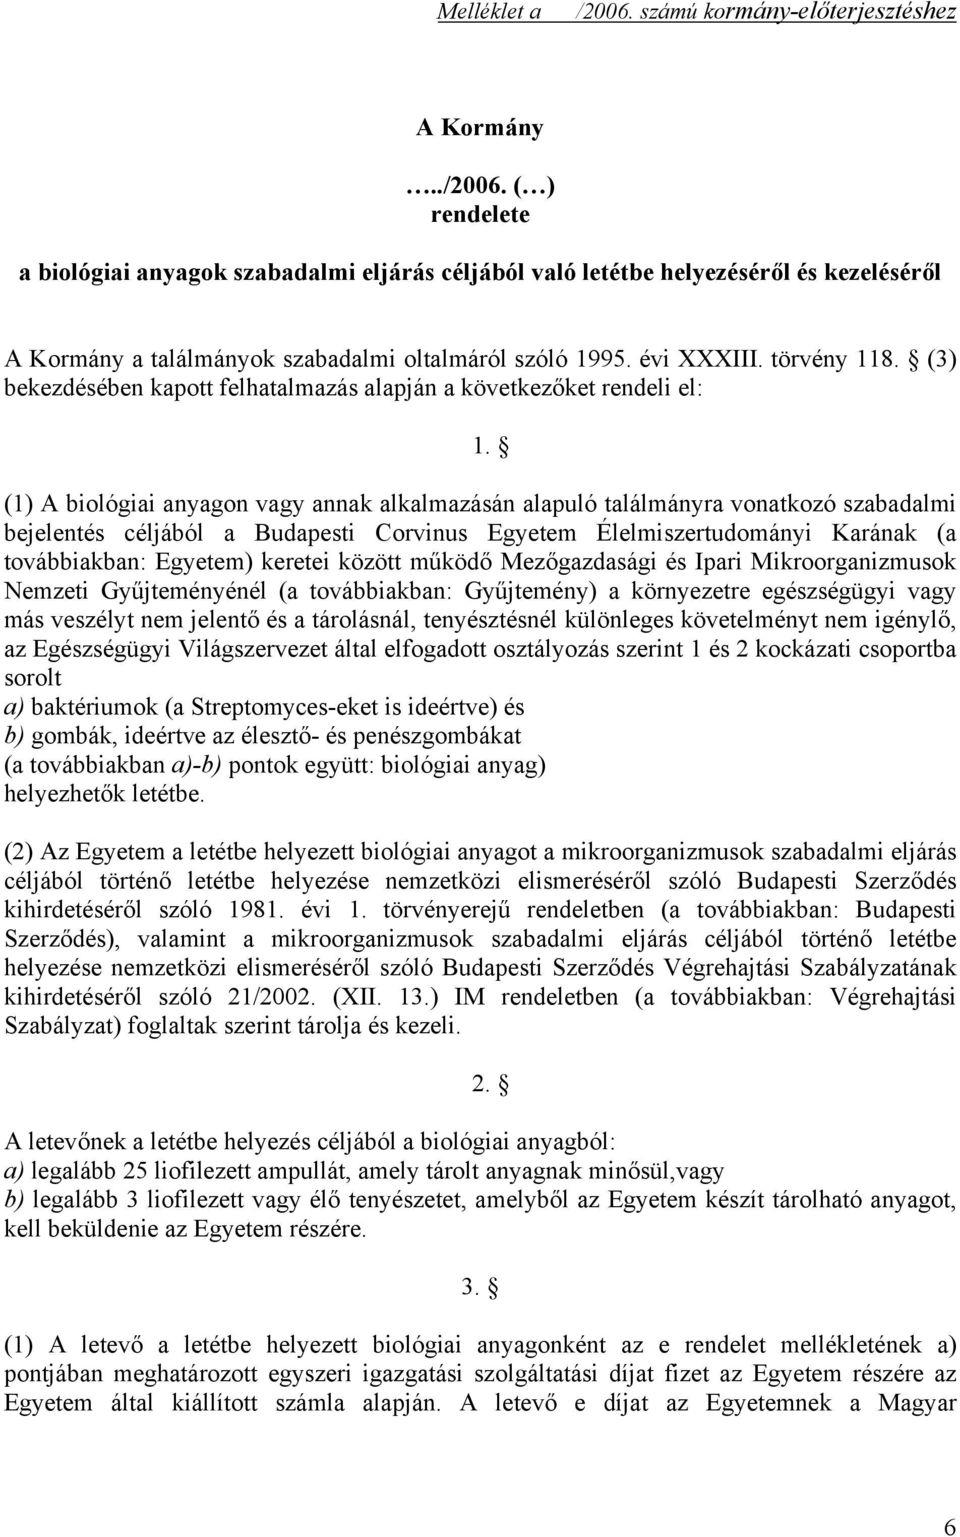 (1) A biológiai anyagon vagy annak alkalmazásán alapuló találmányra vonatkozó szabadalmi bejelentés céljából a Budapesti Corvinus Egyetem Élelmiszertudományi Karának (a továbbiakban: Egyetem) keretei